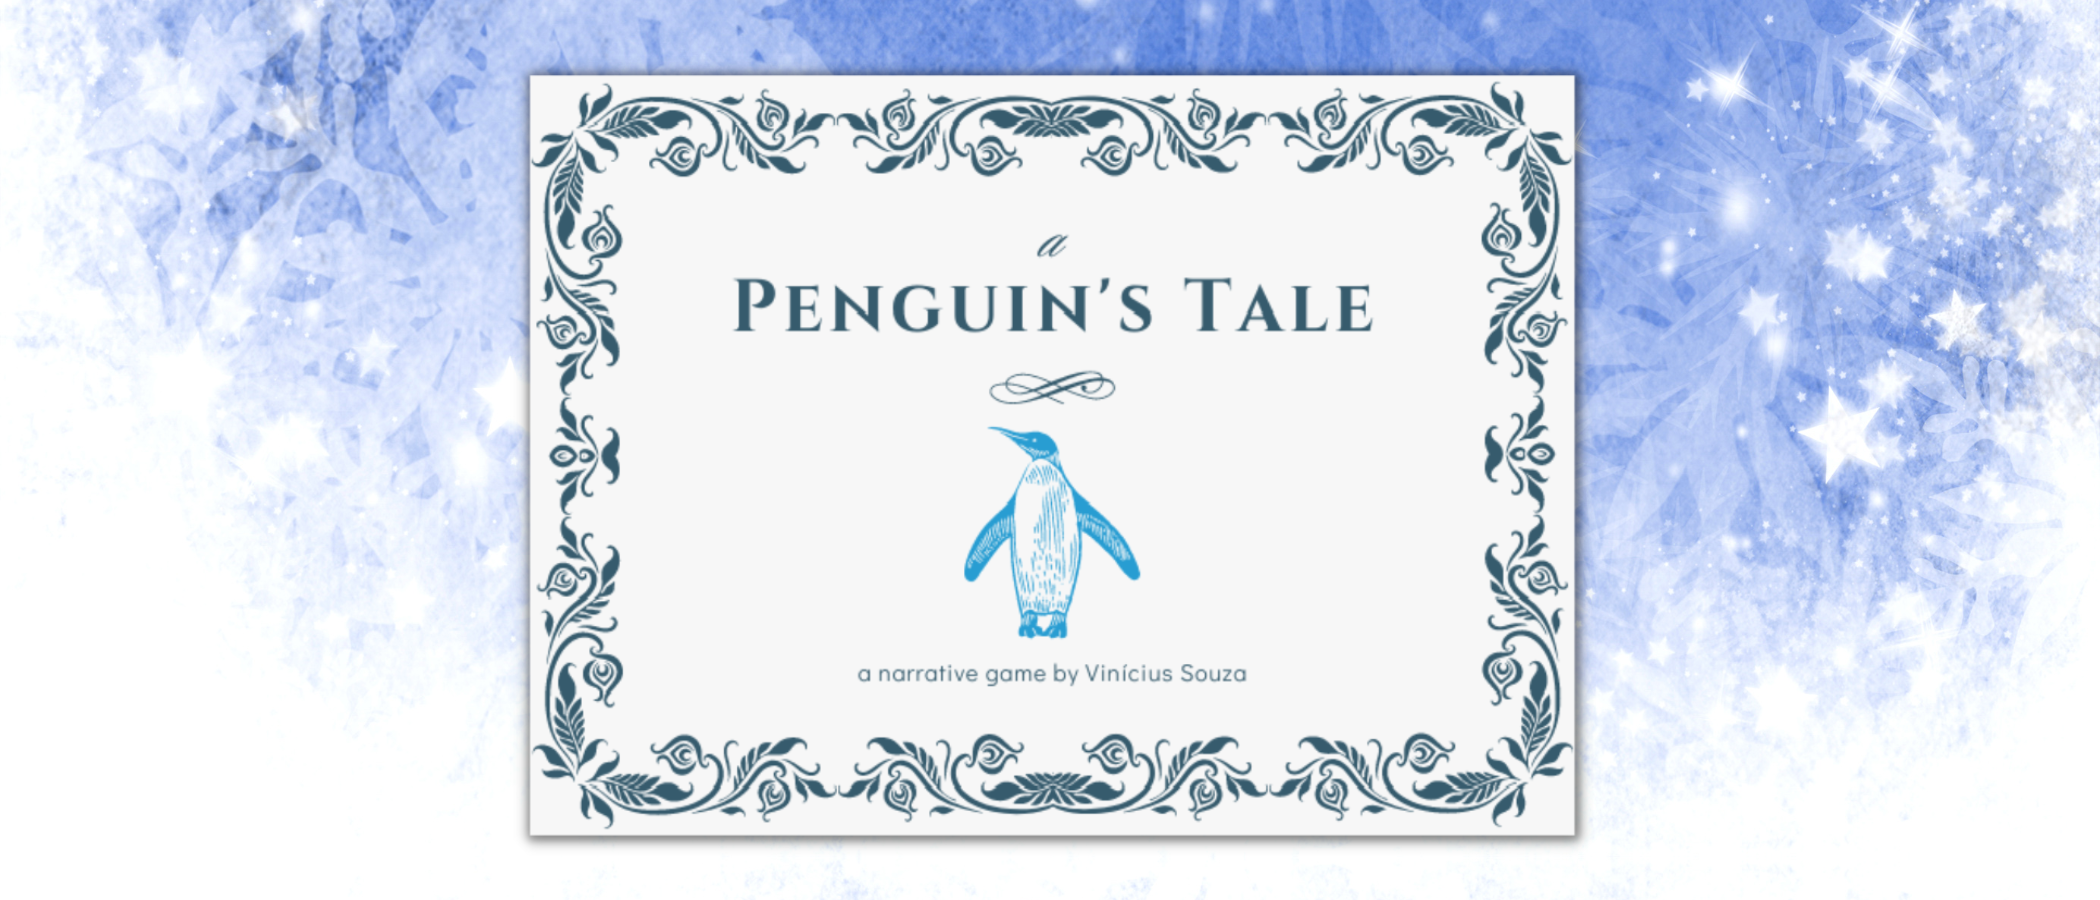 A Penguin's Tale